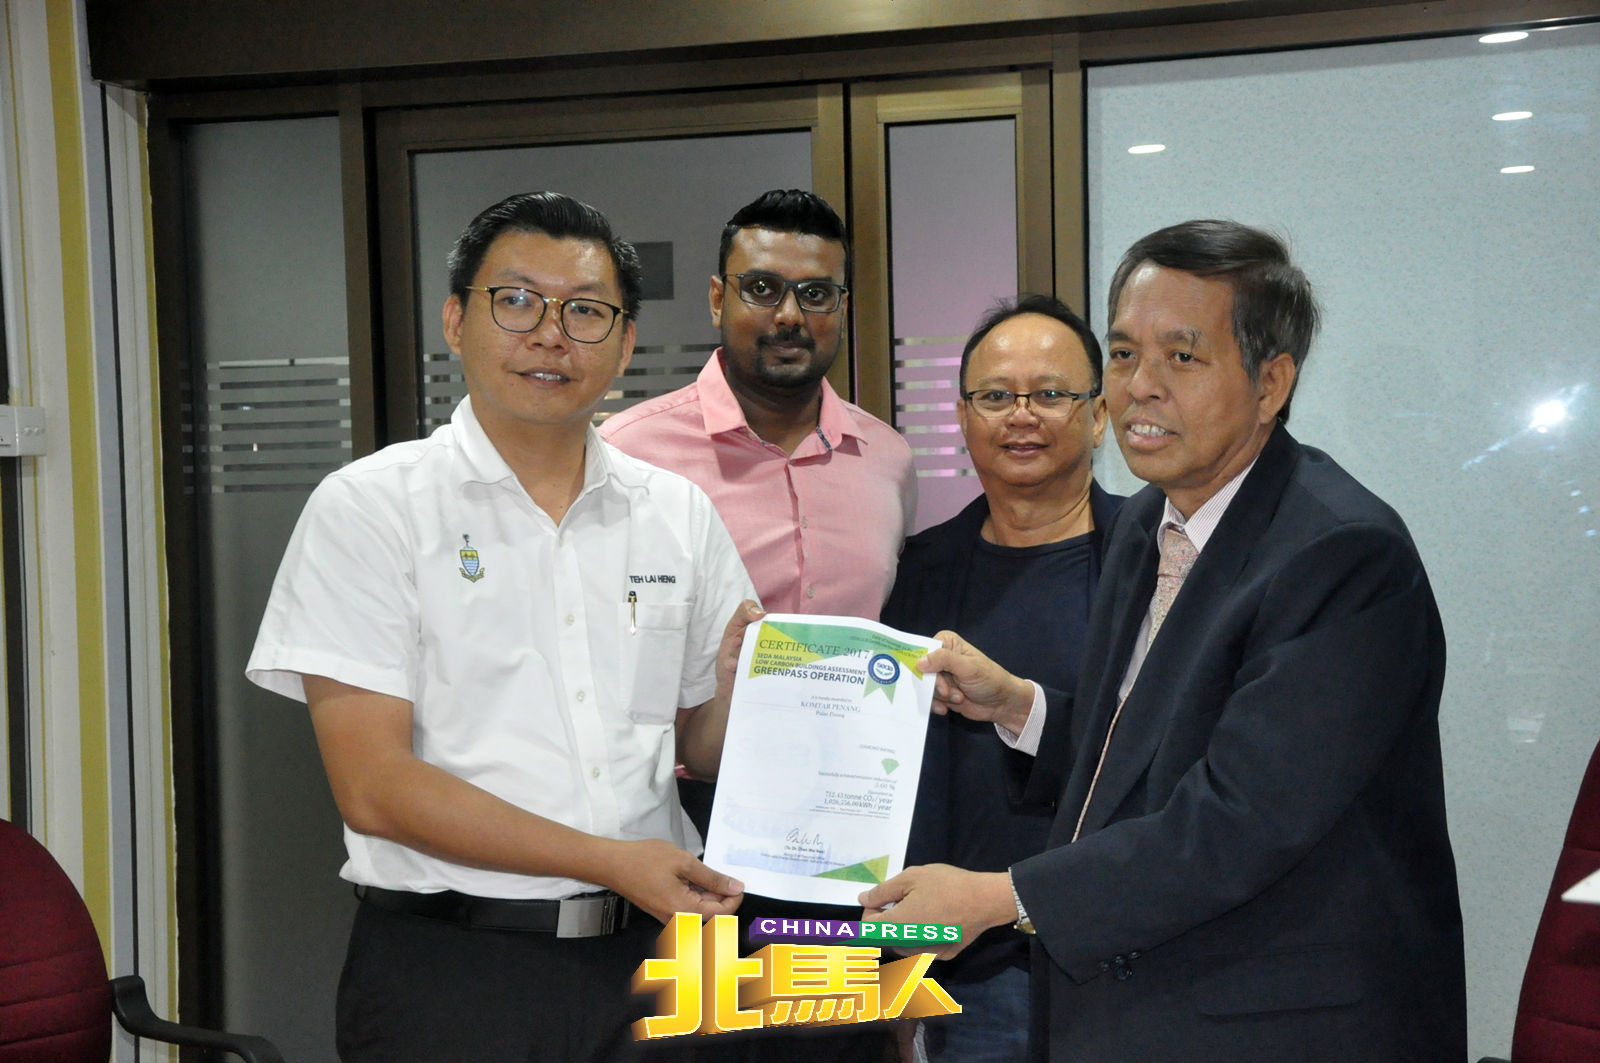 光大获得大马永续能源发展机构（SEDA）颁发一星“低碳建筑奖状”。左起为郑来兴丶莫汉拉惹丶黄其昌和洪祖丰。